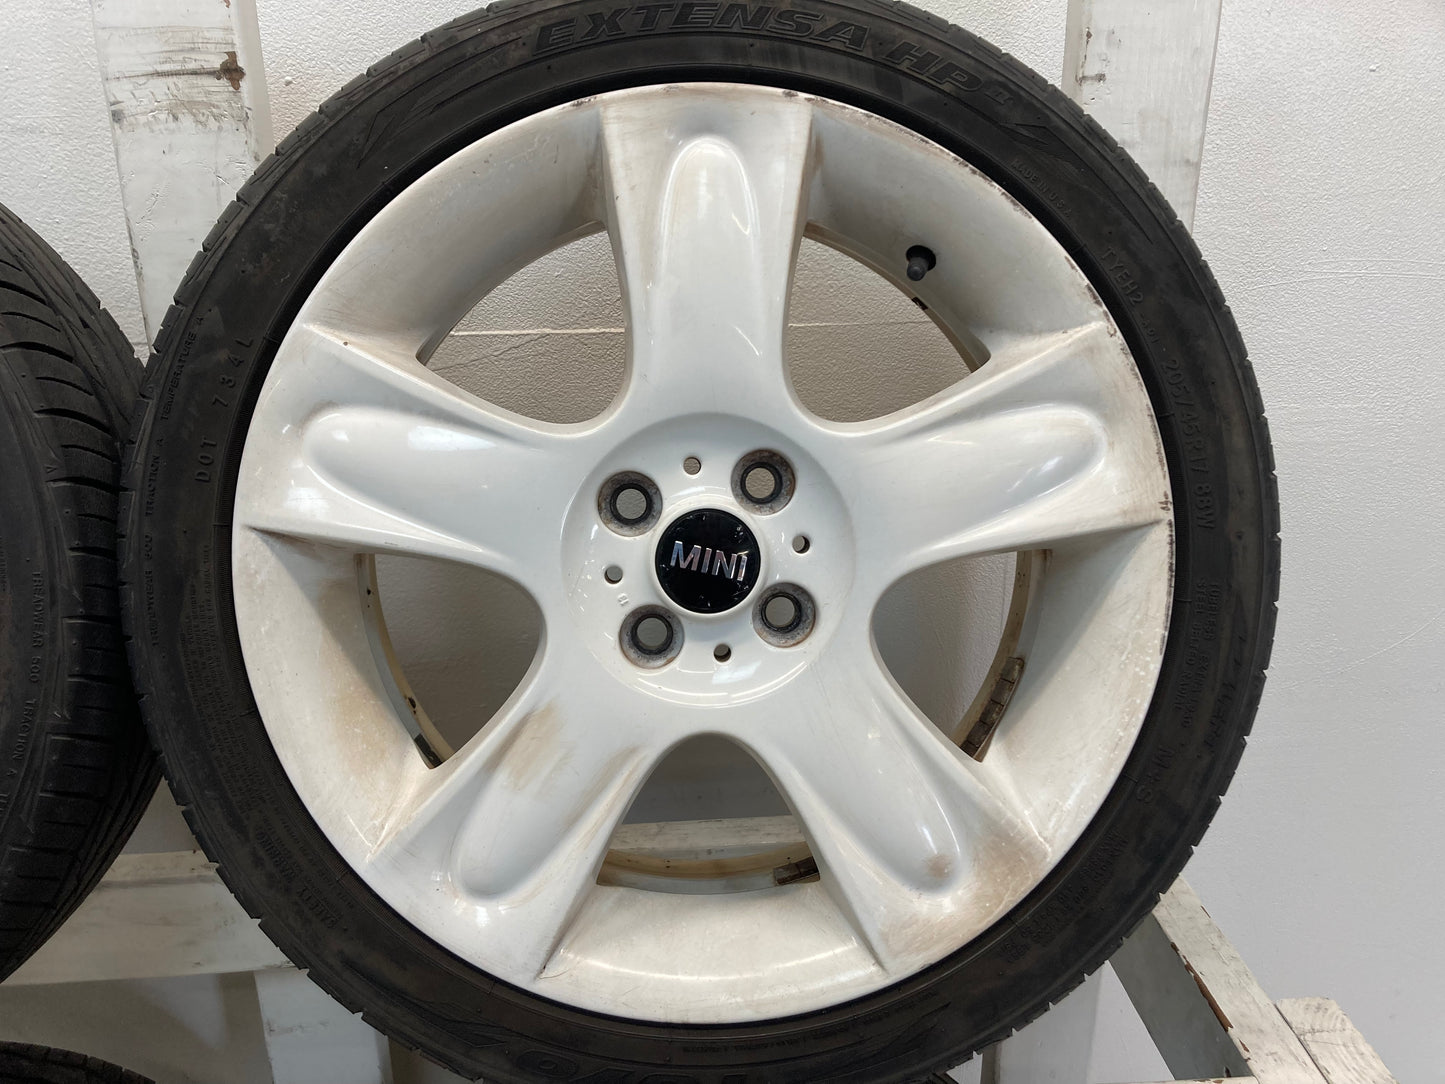 Mini Cooper White 5-Star Spoke Wheels R91 36116784099 02-15 R5x 423